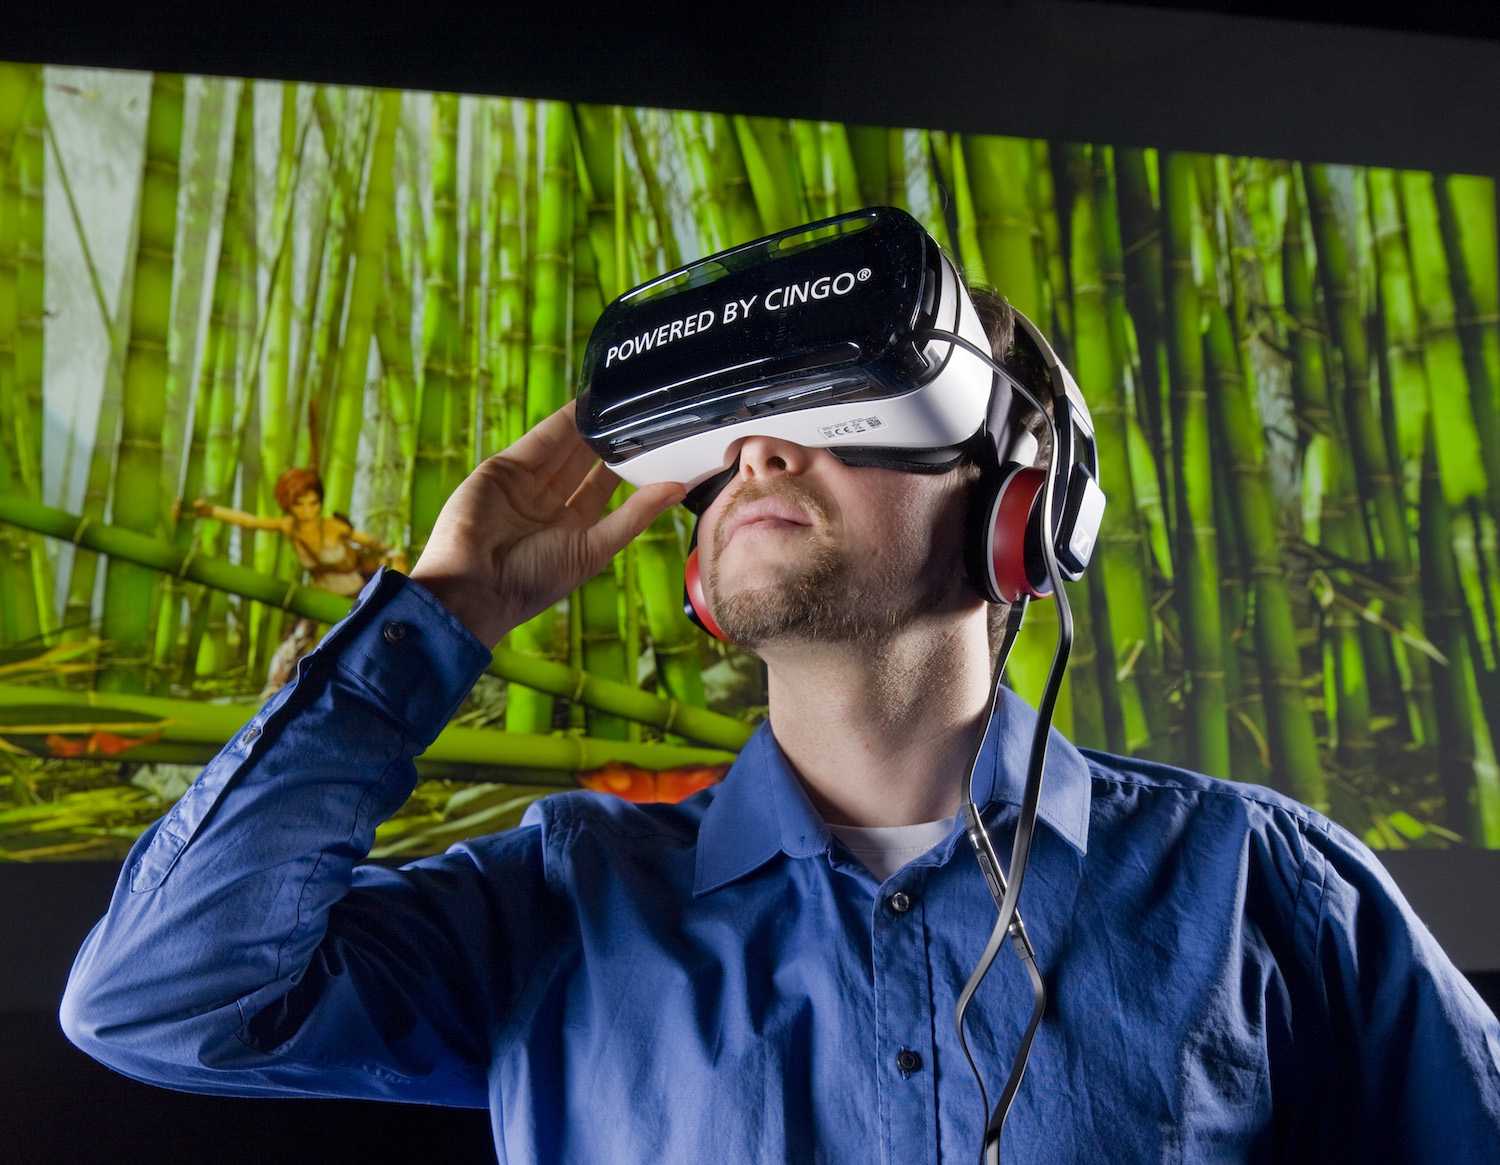 Выпустить виртуальный мир. VR виртуальная реальность. Виртуальная реальность без погружения. Человек в виртуальной реальности. Очки виртуальной реальности на человеке.